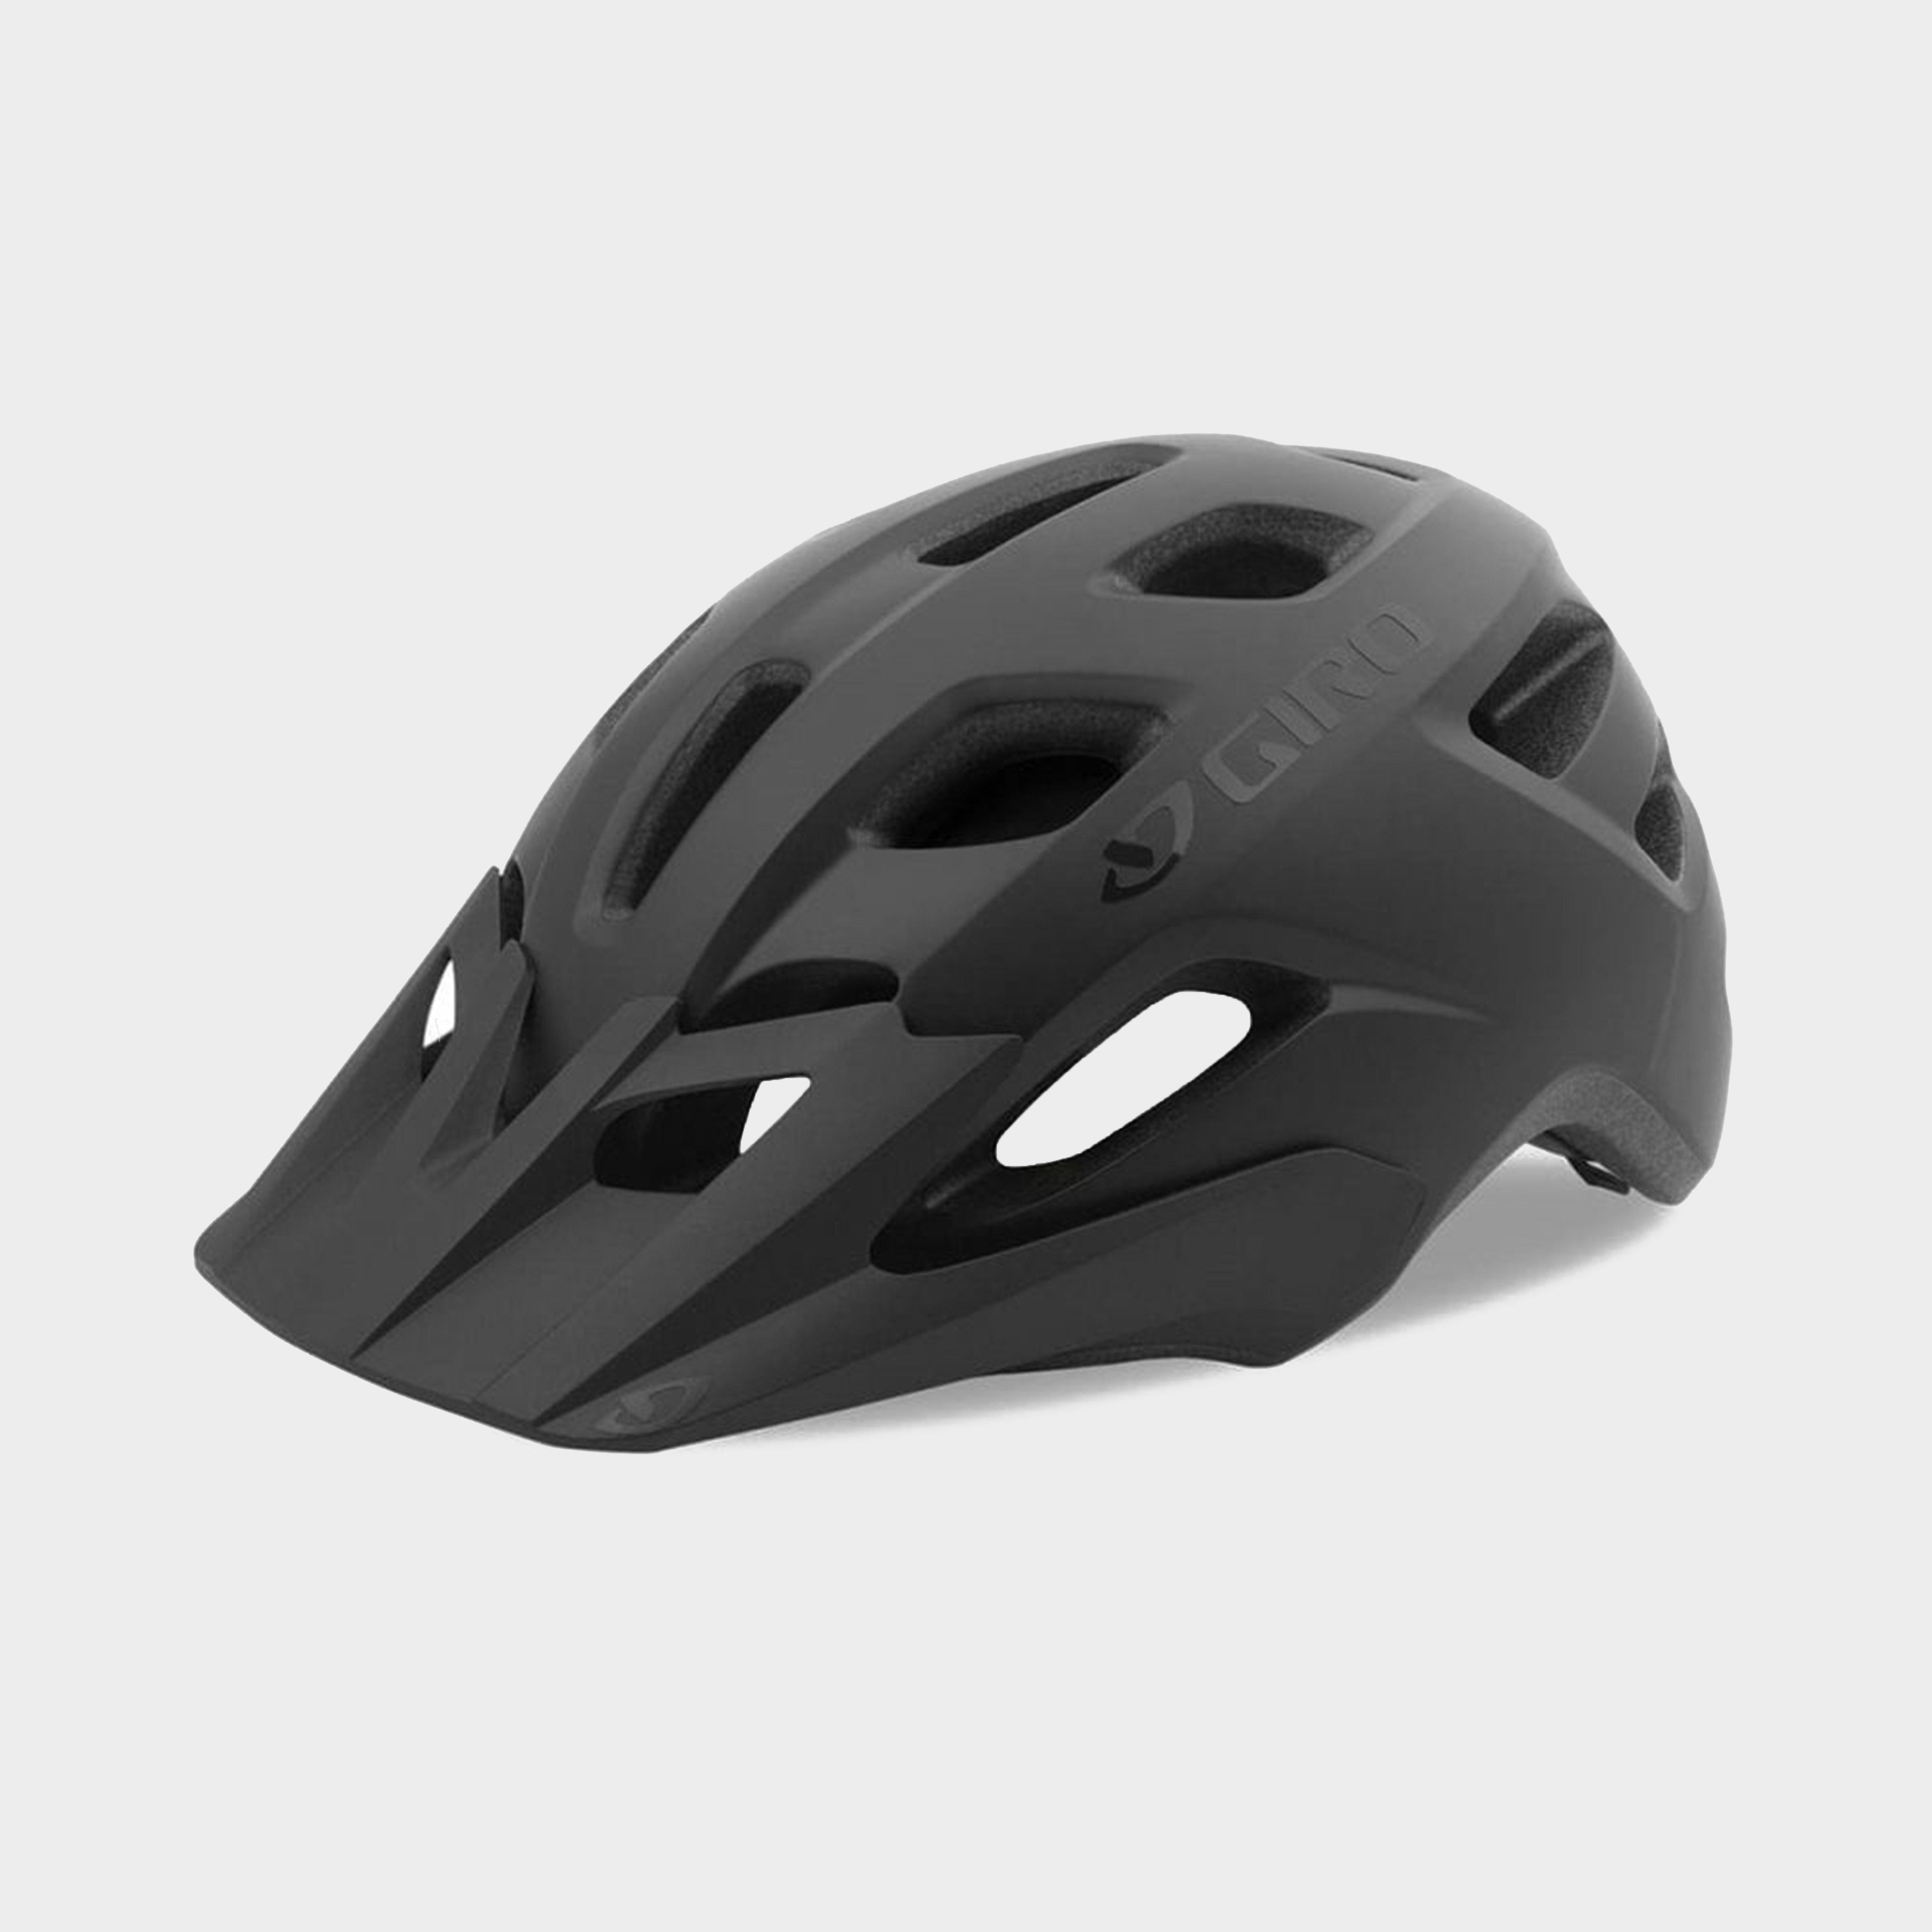 Giro Fixture Mips Helmet - Black/black  Black/black